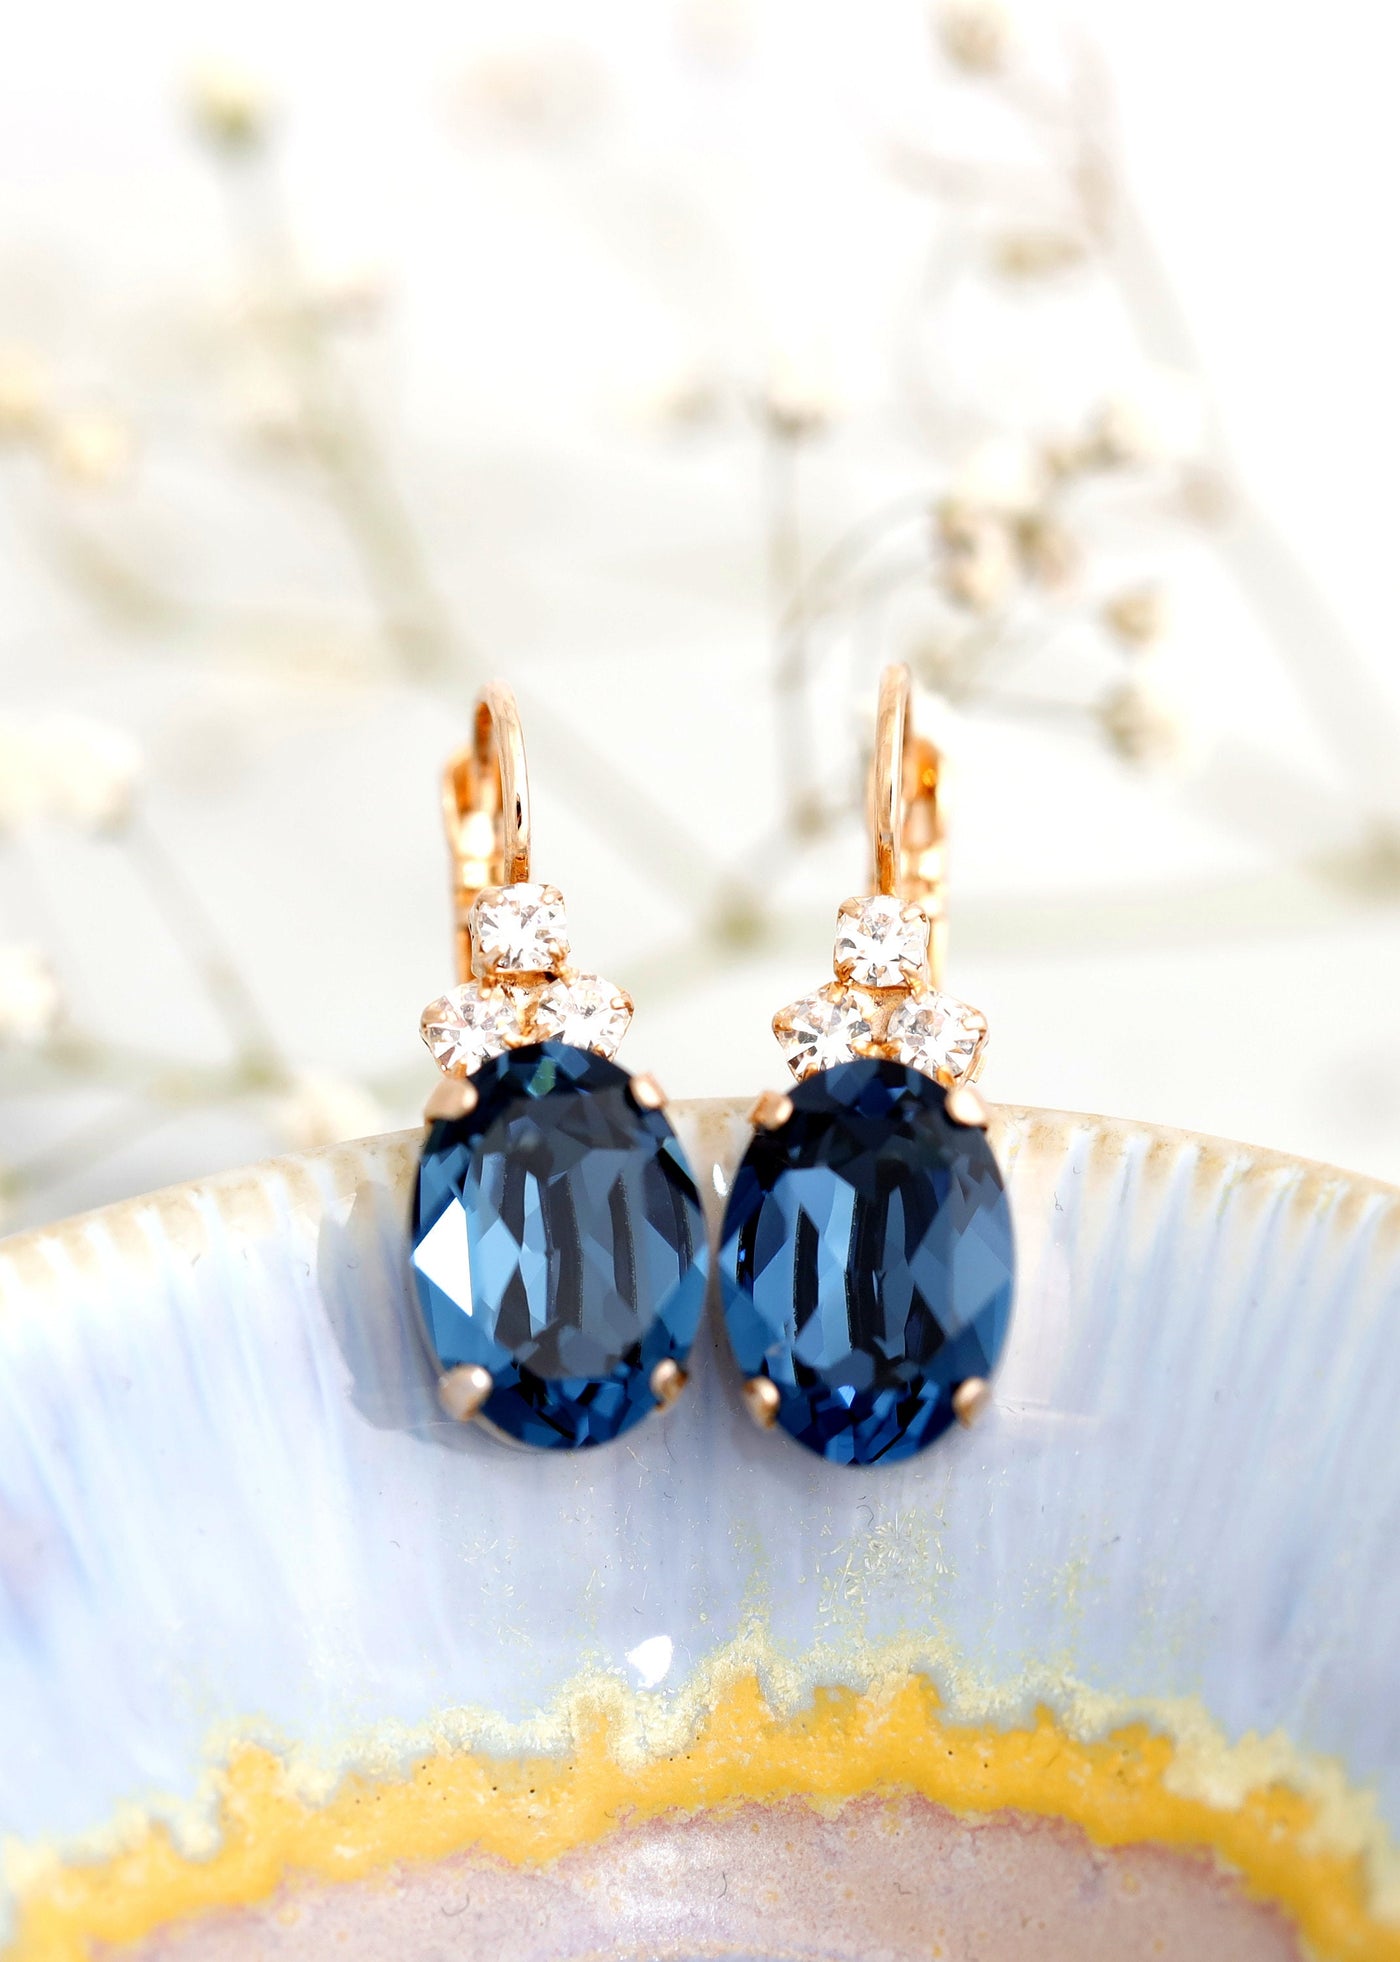 Silgo 925 Sterling Silver earrings for women - Blue Cubic Zirconia Earrings  - Dangle earrings for women